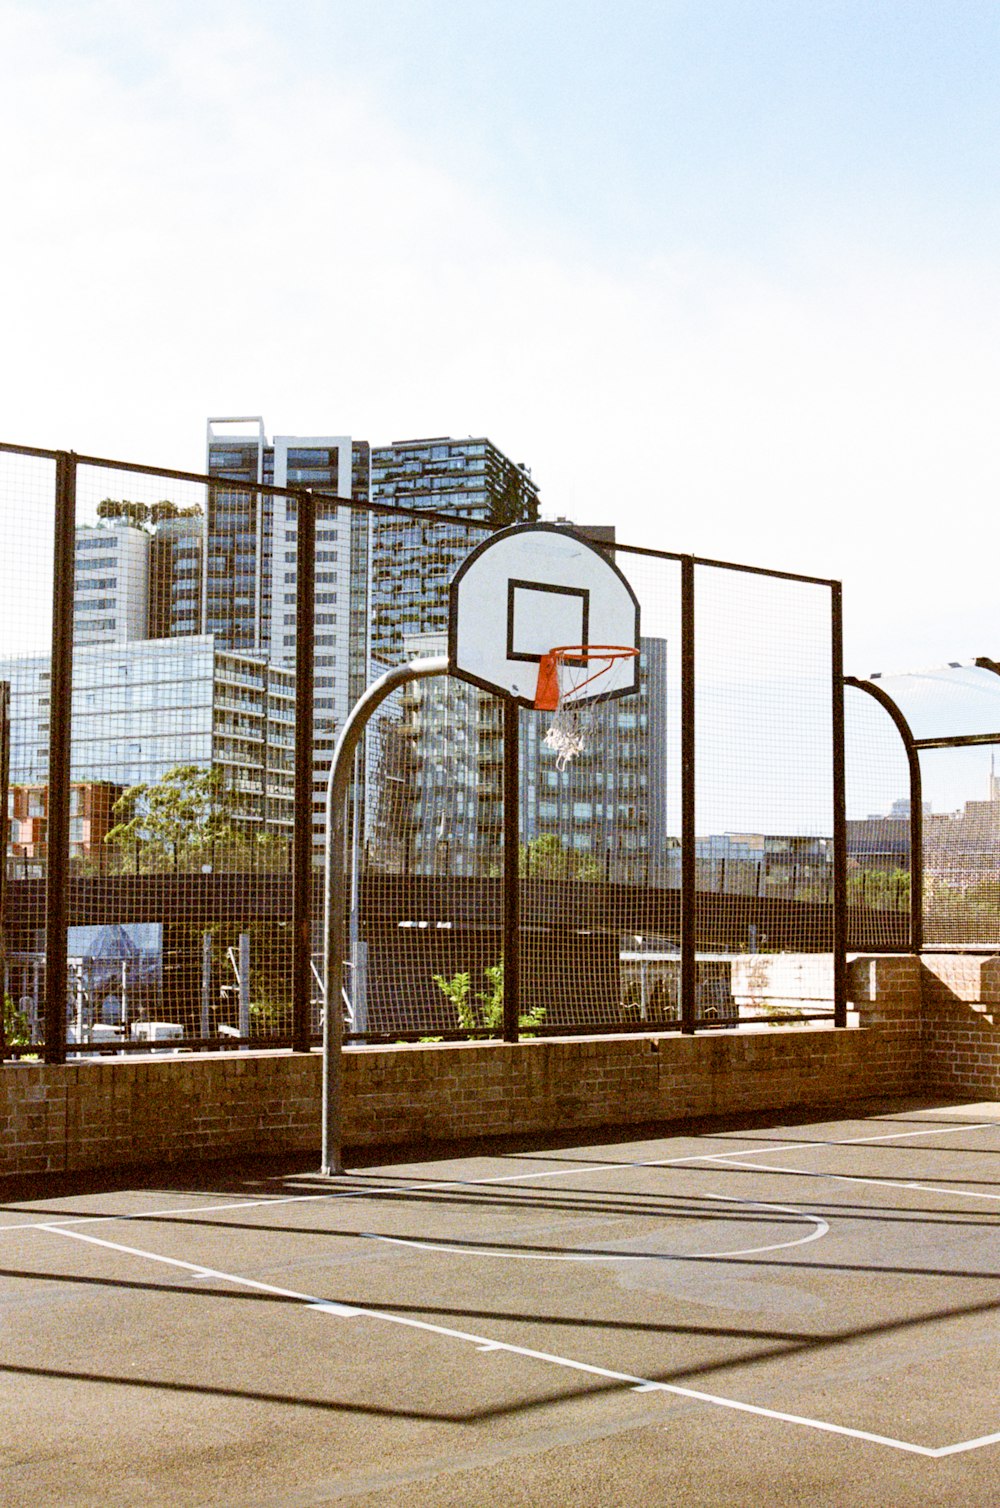 Foto zum Thema Basketballkorb in der nähe des gebäudes tagsüber –  Kostenloses Bild zu Australien auf Unsplash